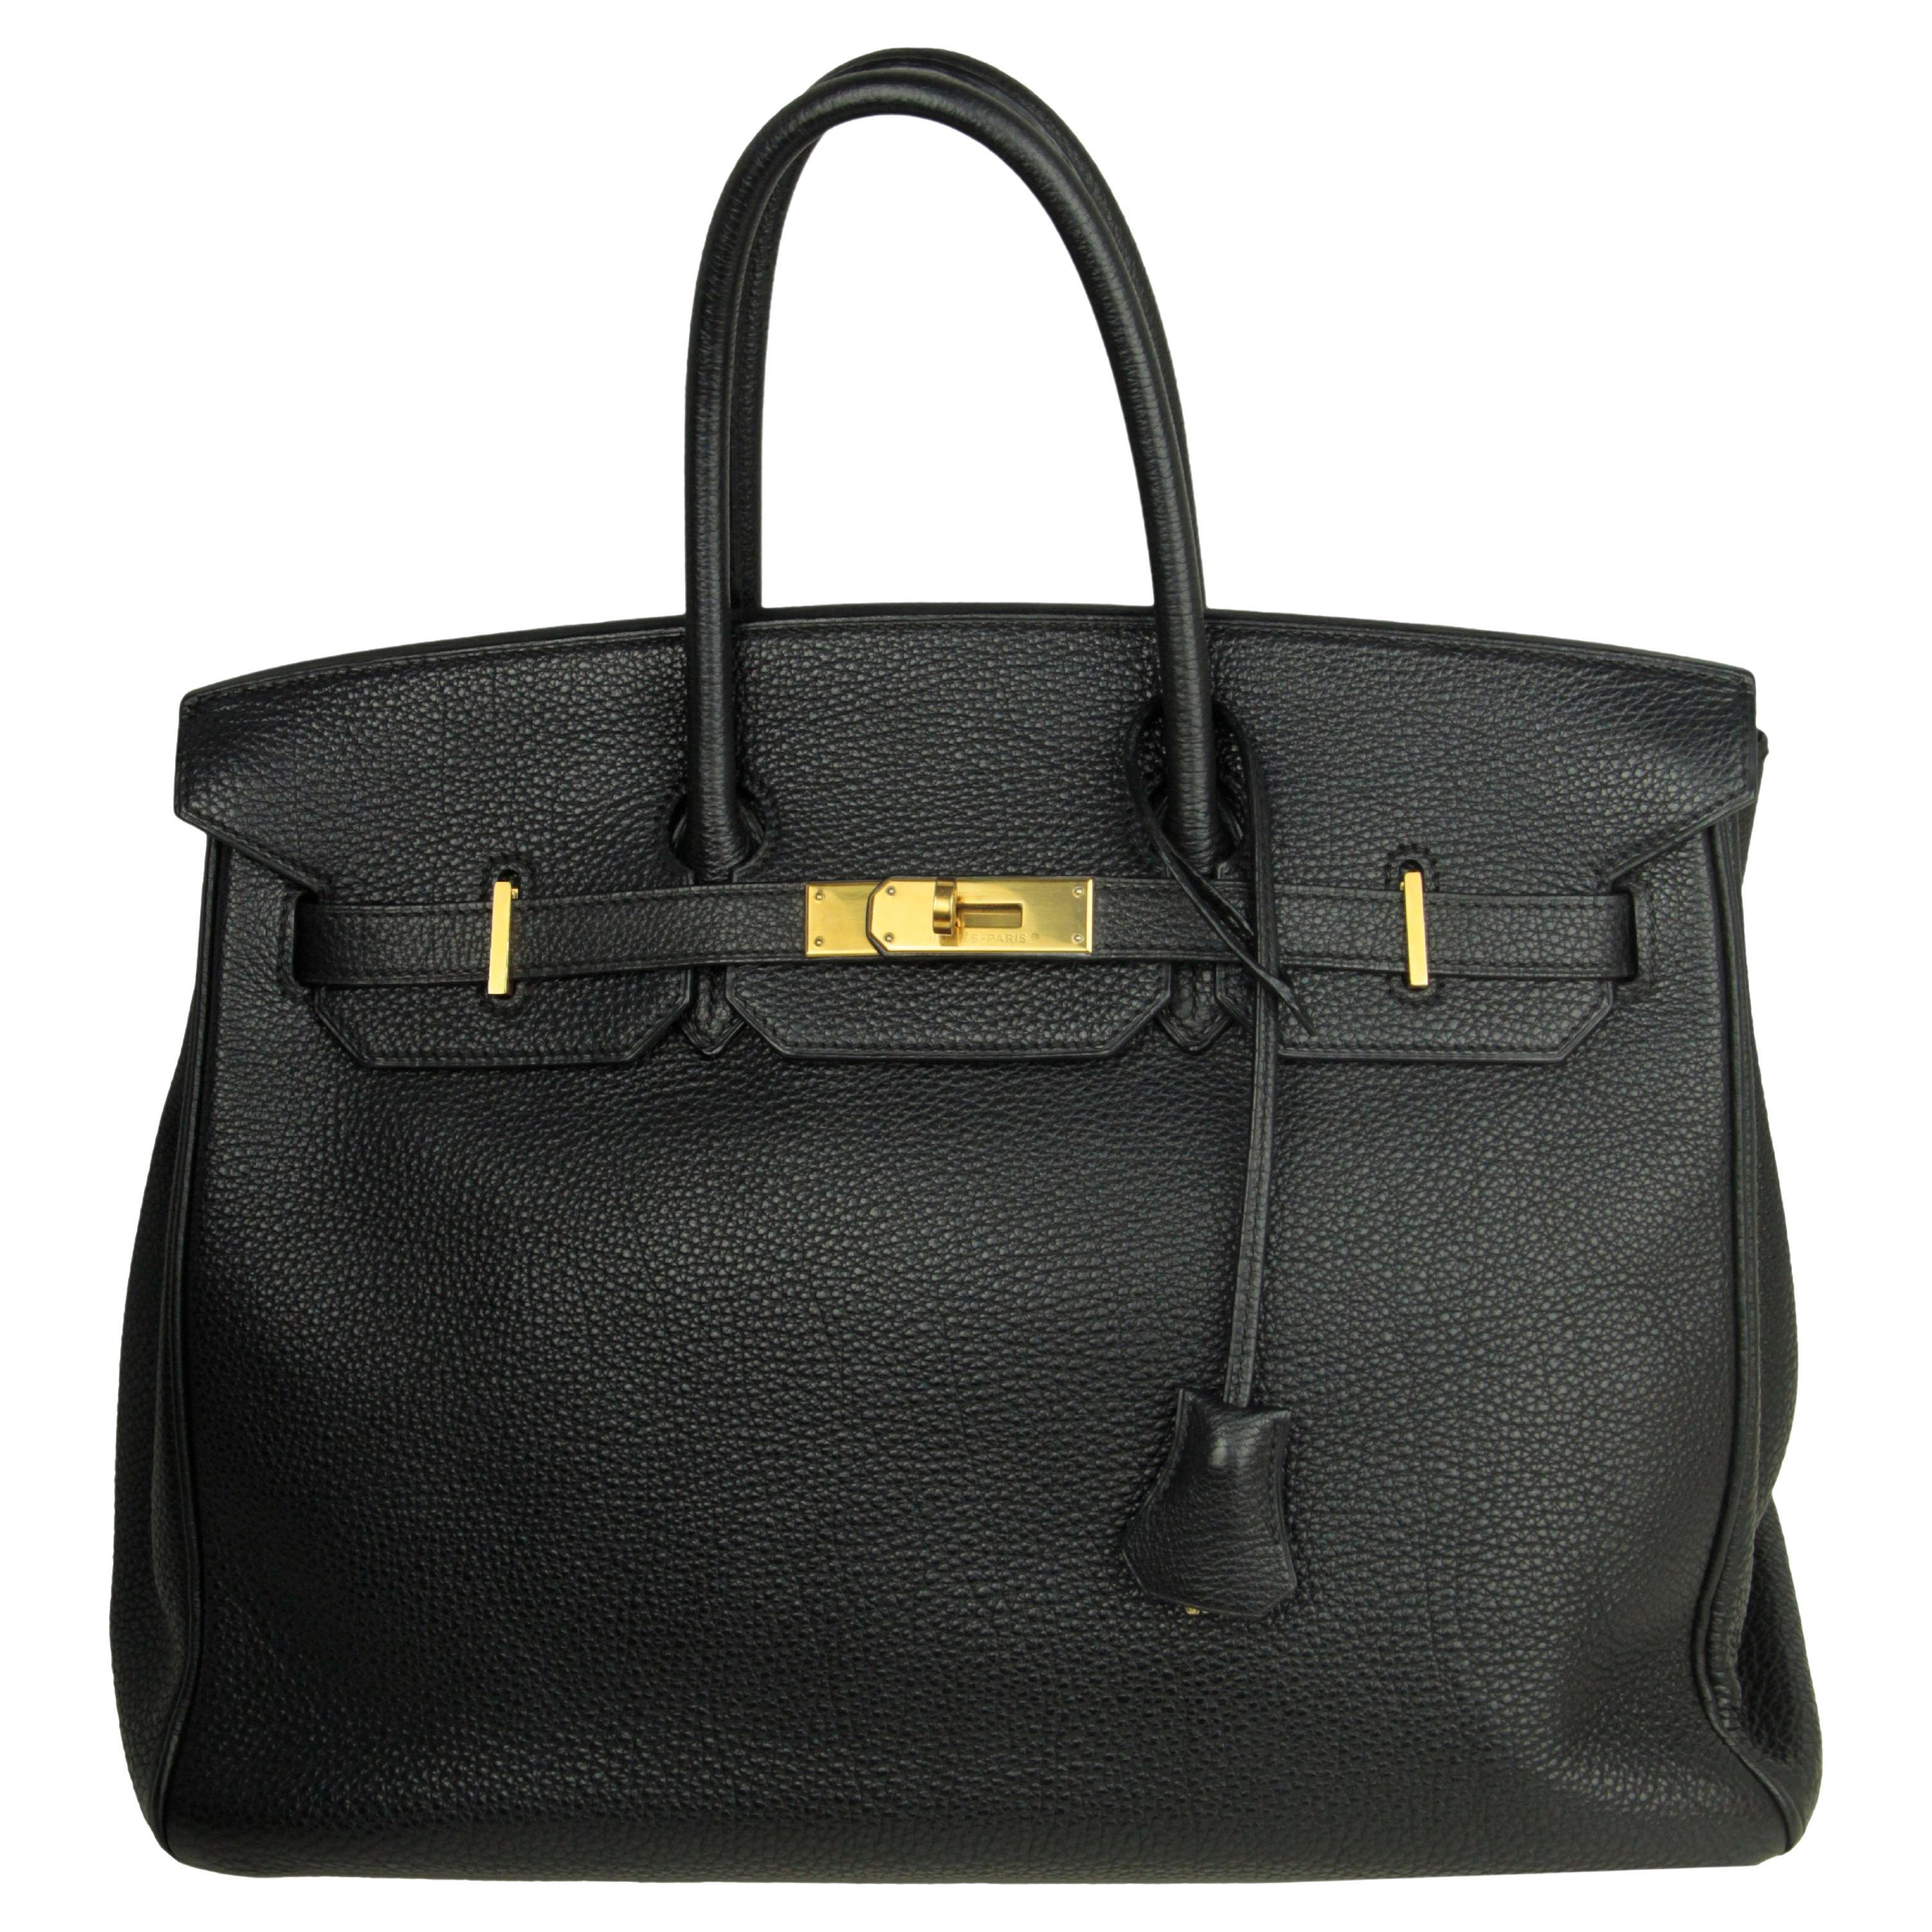 Hermes Black Togo Leather 35cm Birkin Bag GHW For Sale